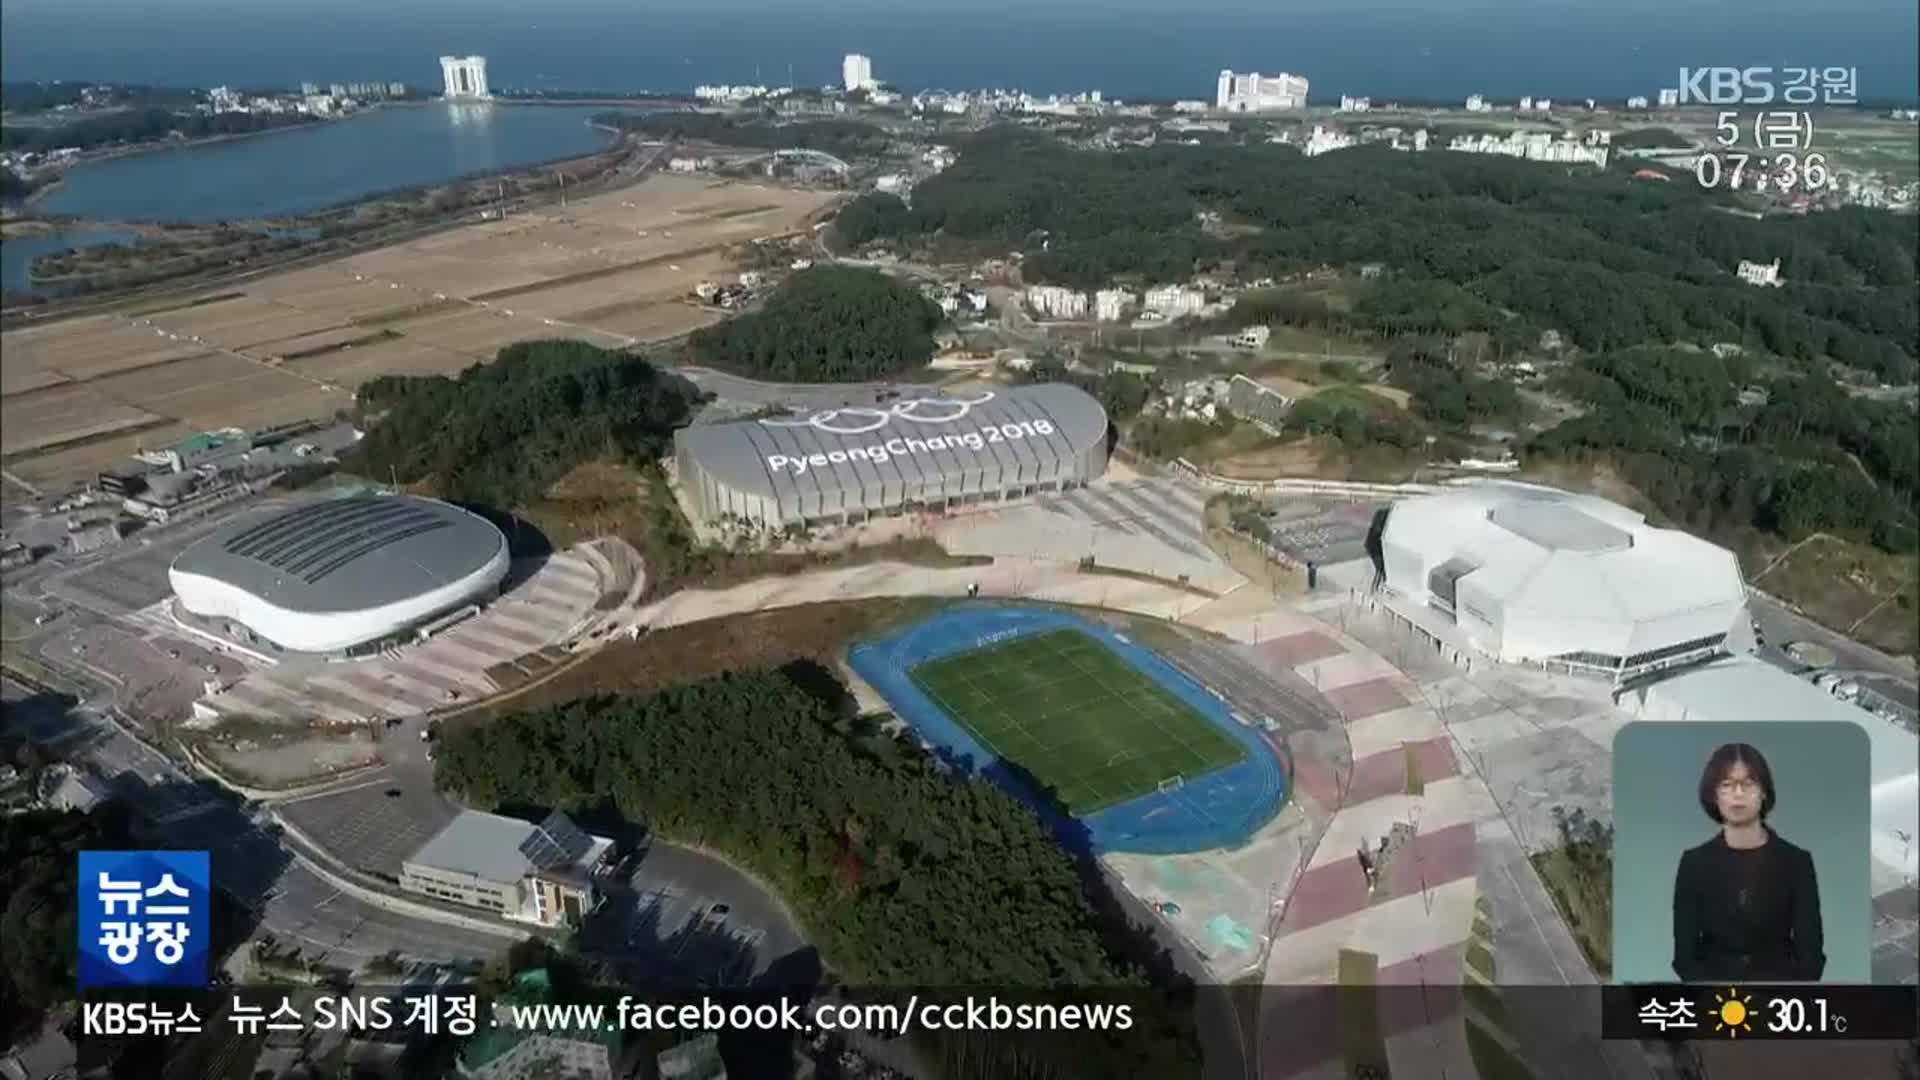 올림픽 시설 활용 ‘G-SHOW’ 공개…장기 활용 방안은?